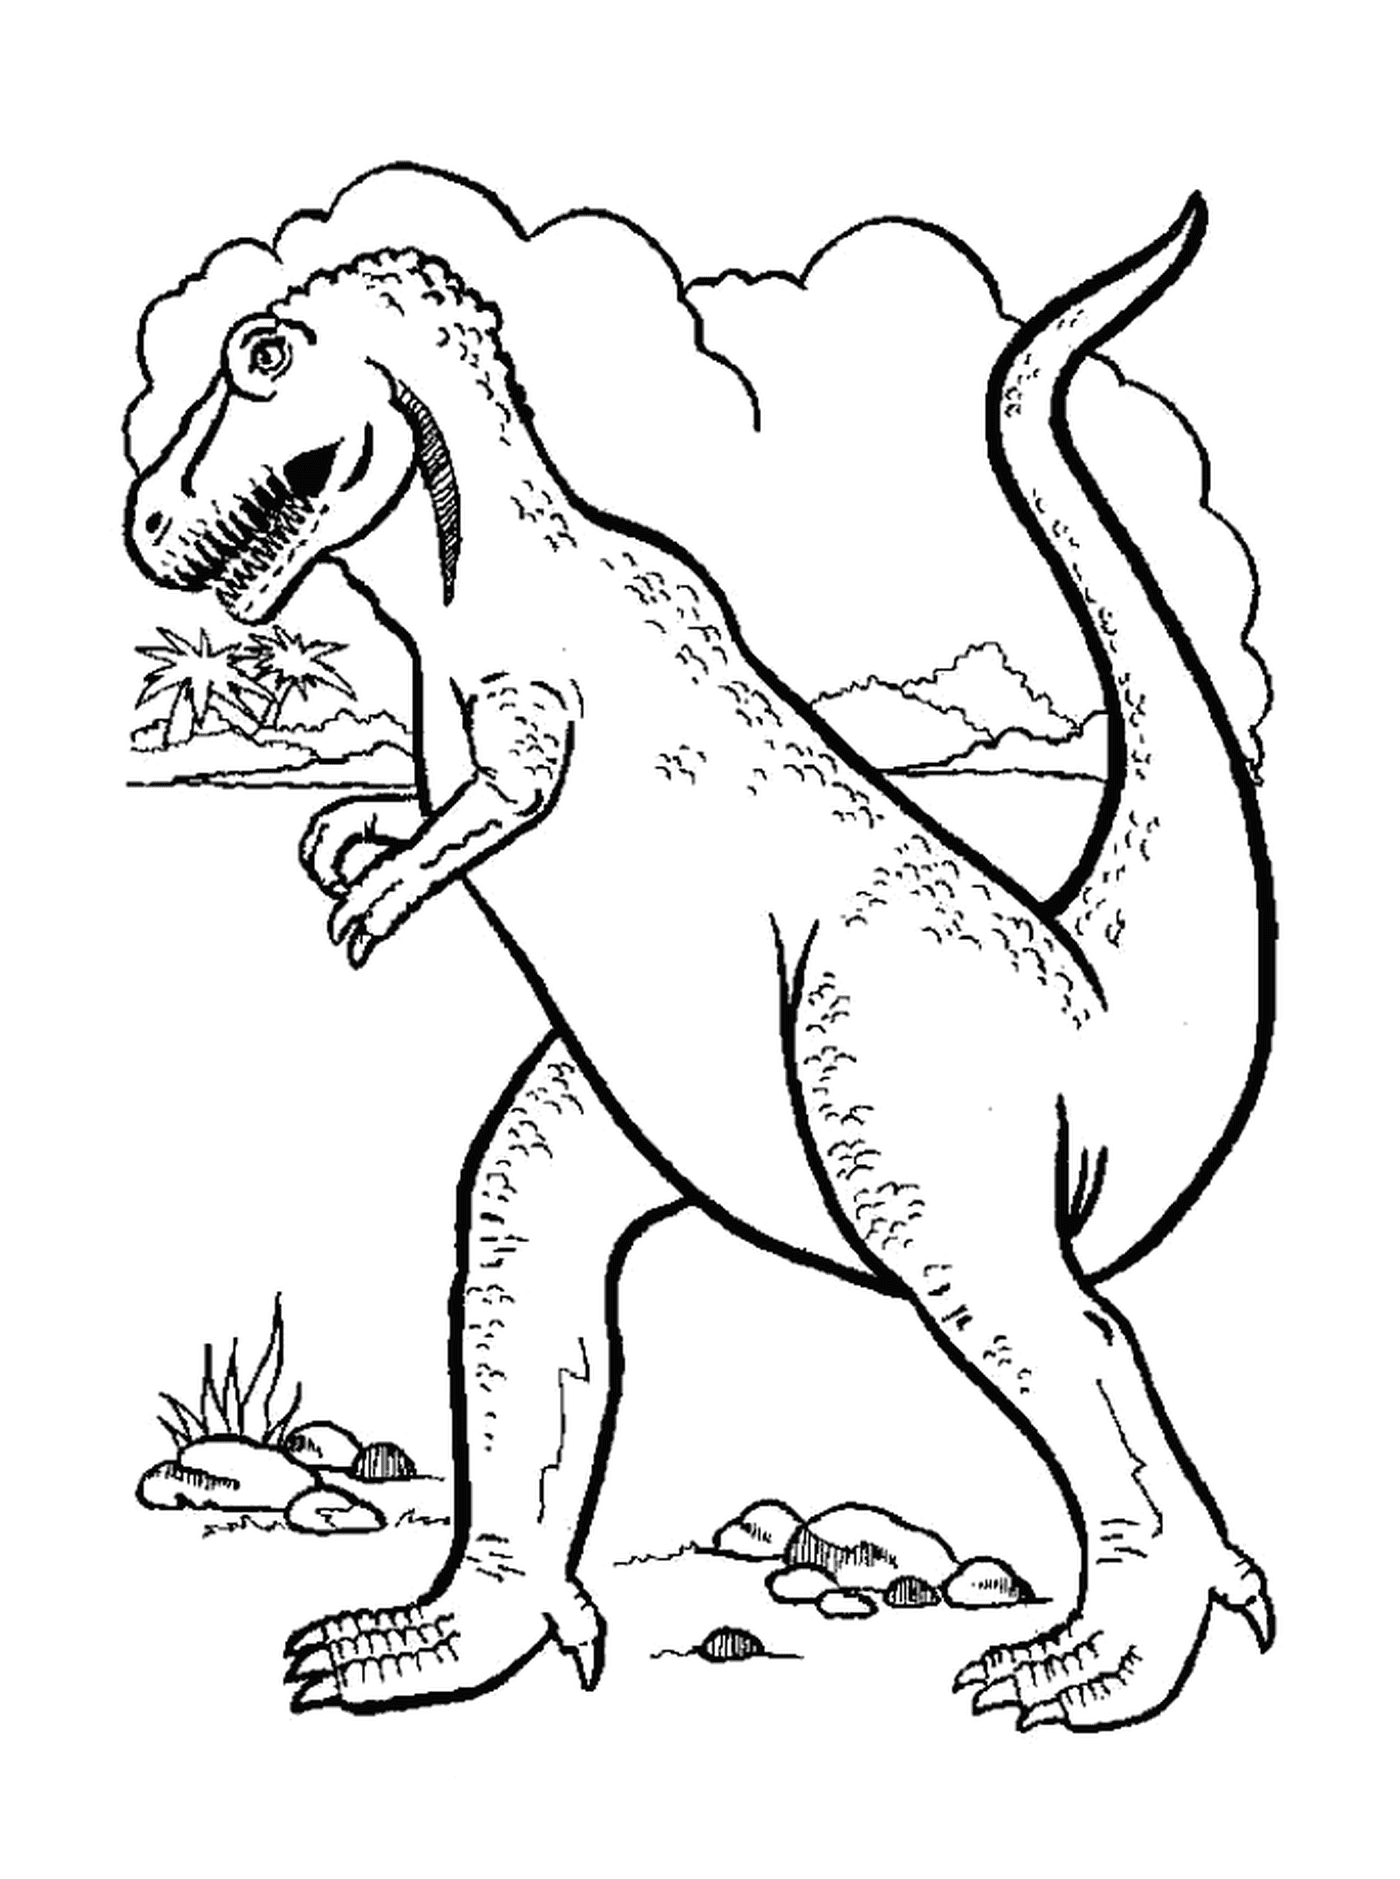  Dinosaurio cautivador e intrigante 